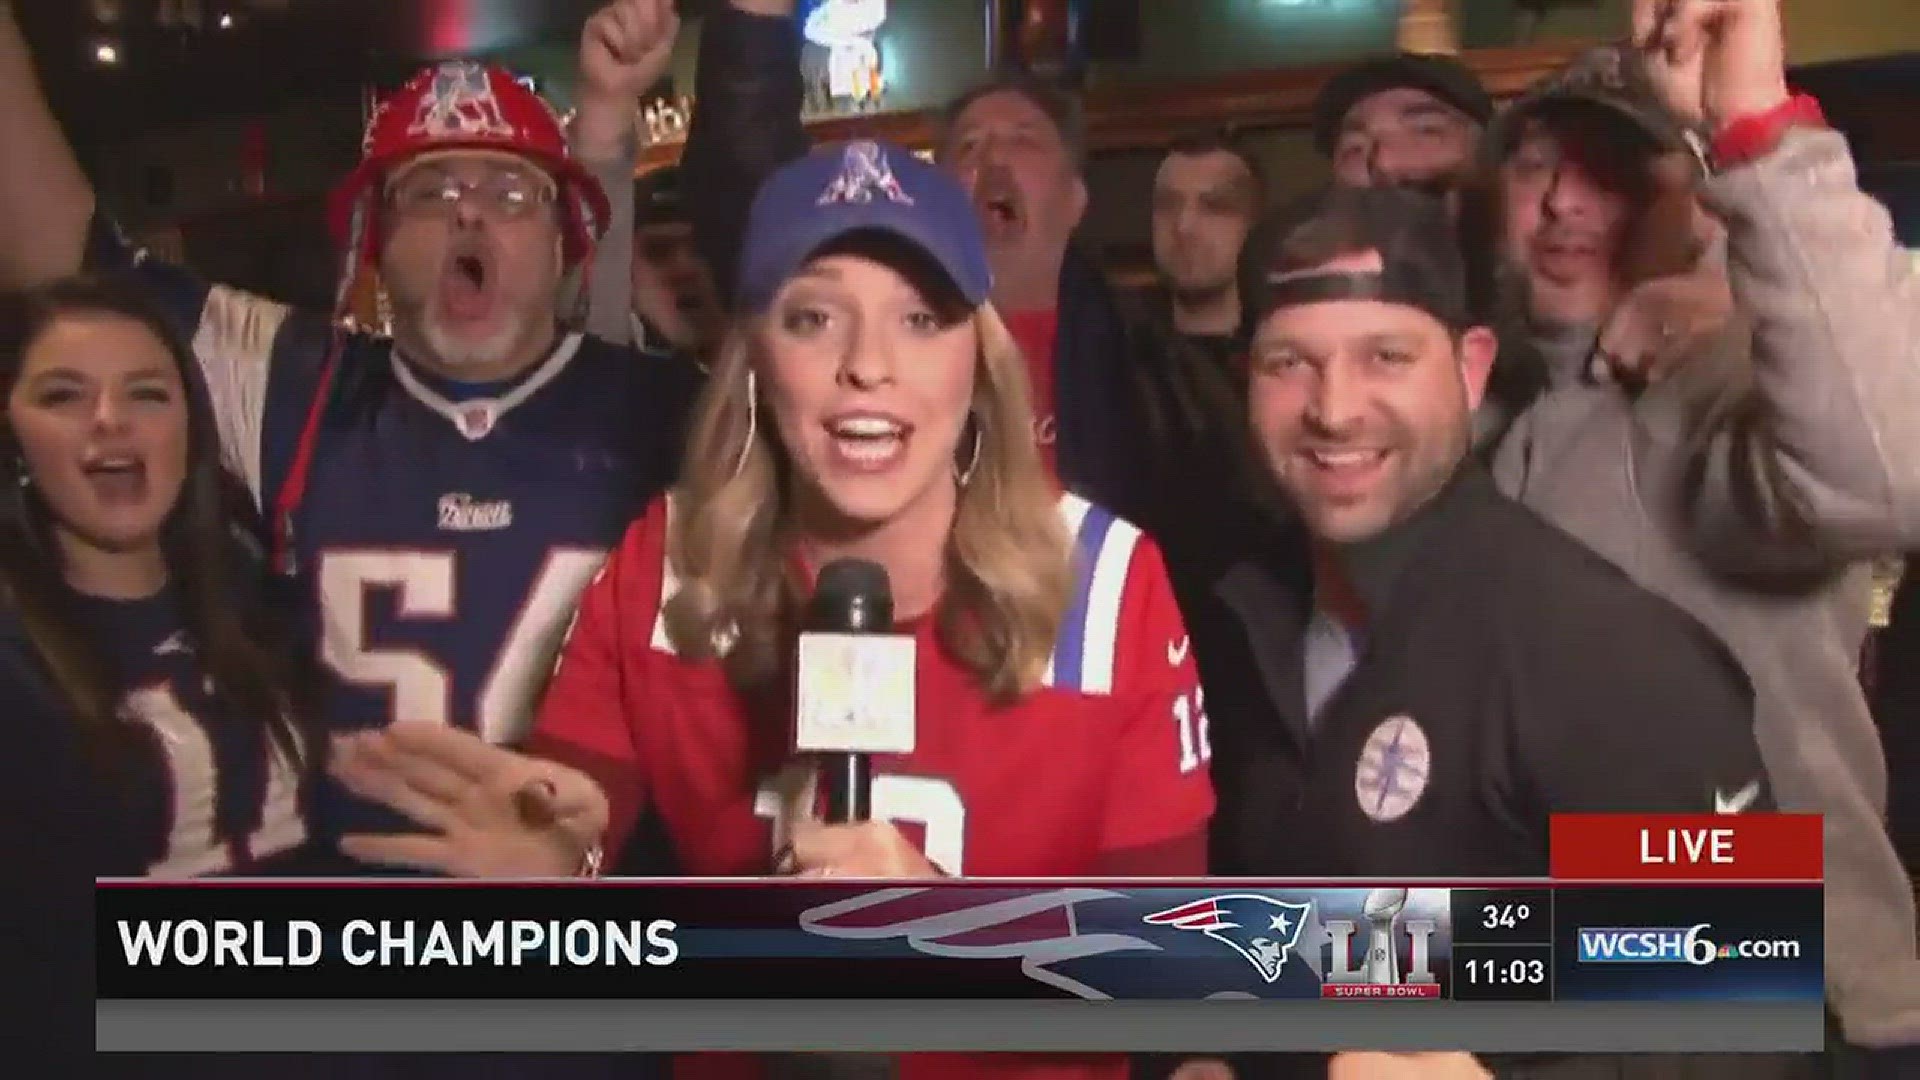 Maine's Patriots fans go insane for Super Bowl 51